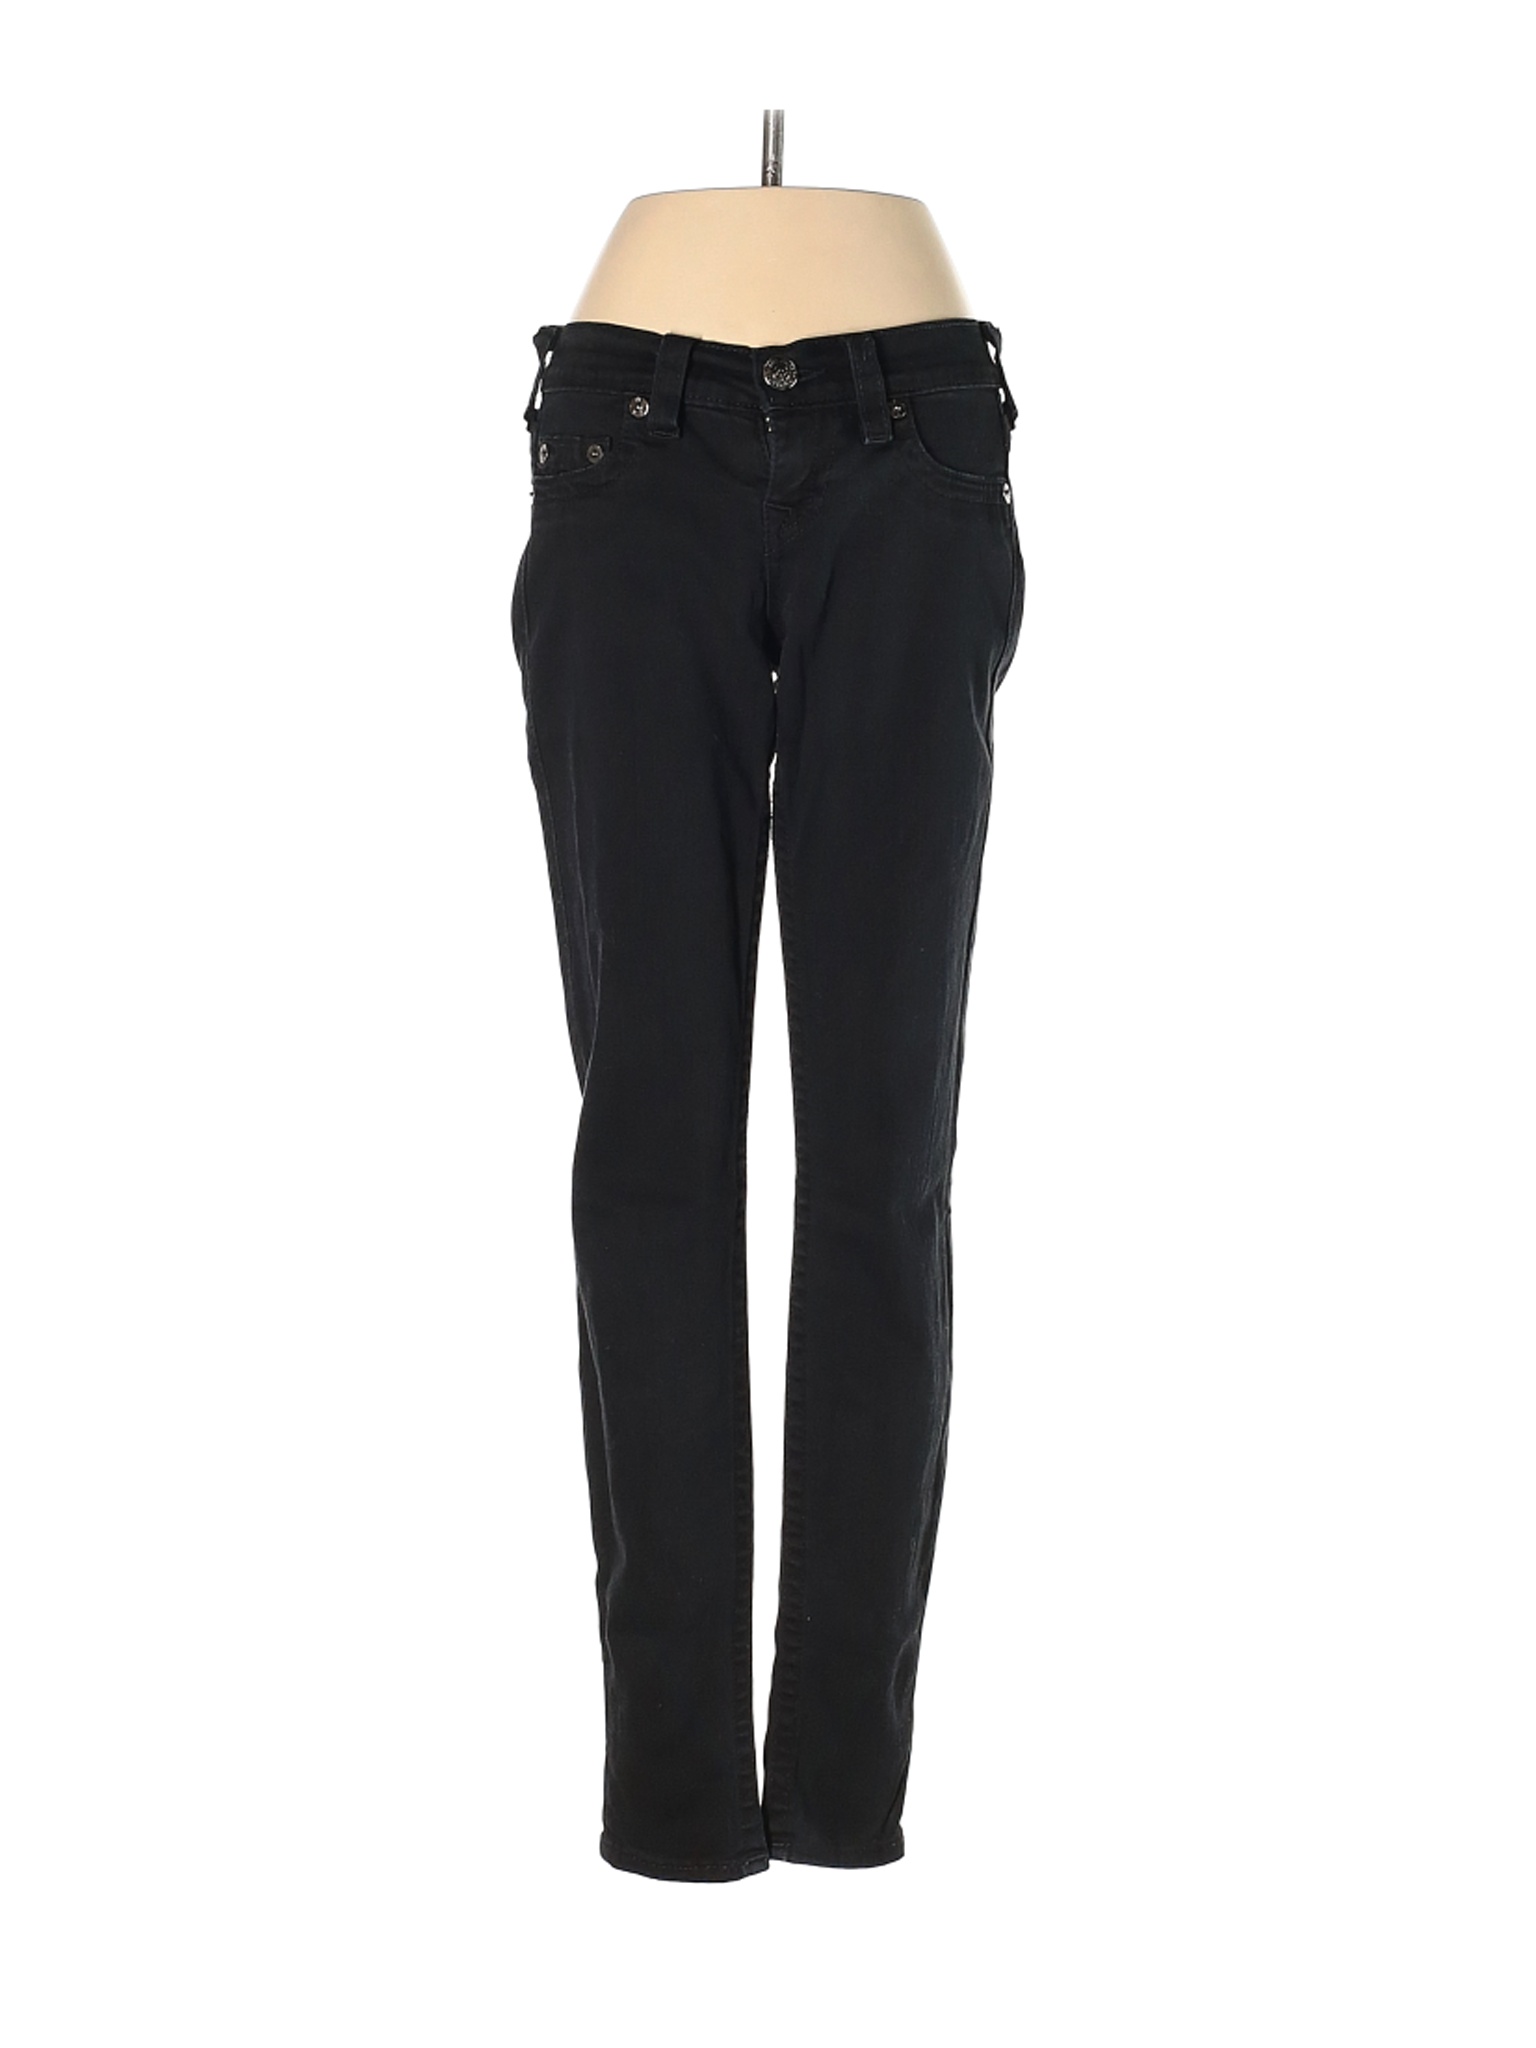 True Religion Women Black Jeans 25W | eBay